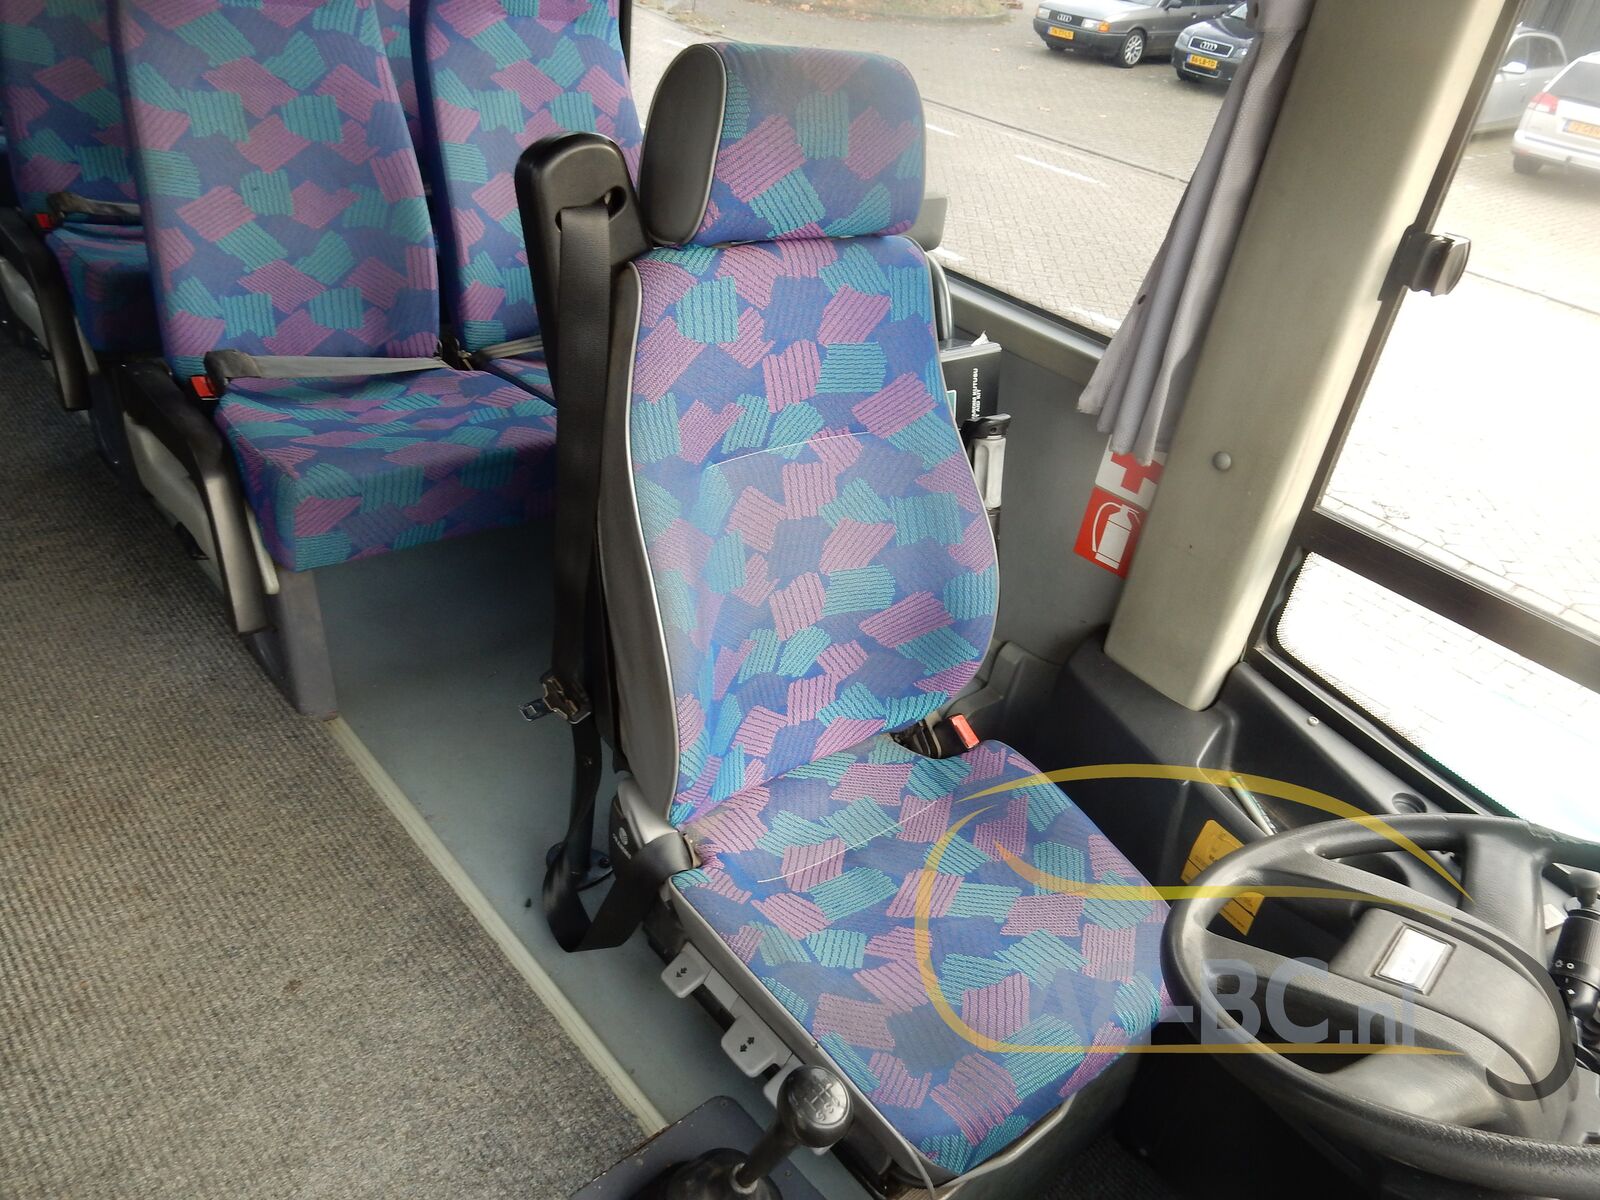 coach-bus-OTOKAR-Navigo-28-Seats---1636639415229603872_orig_a4795191b1ddac0b72770ede22f3deaf--21111115533115941900